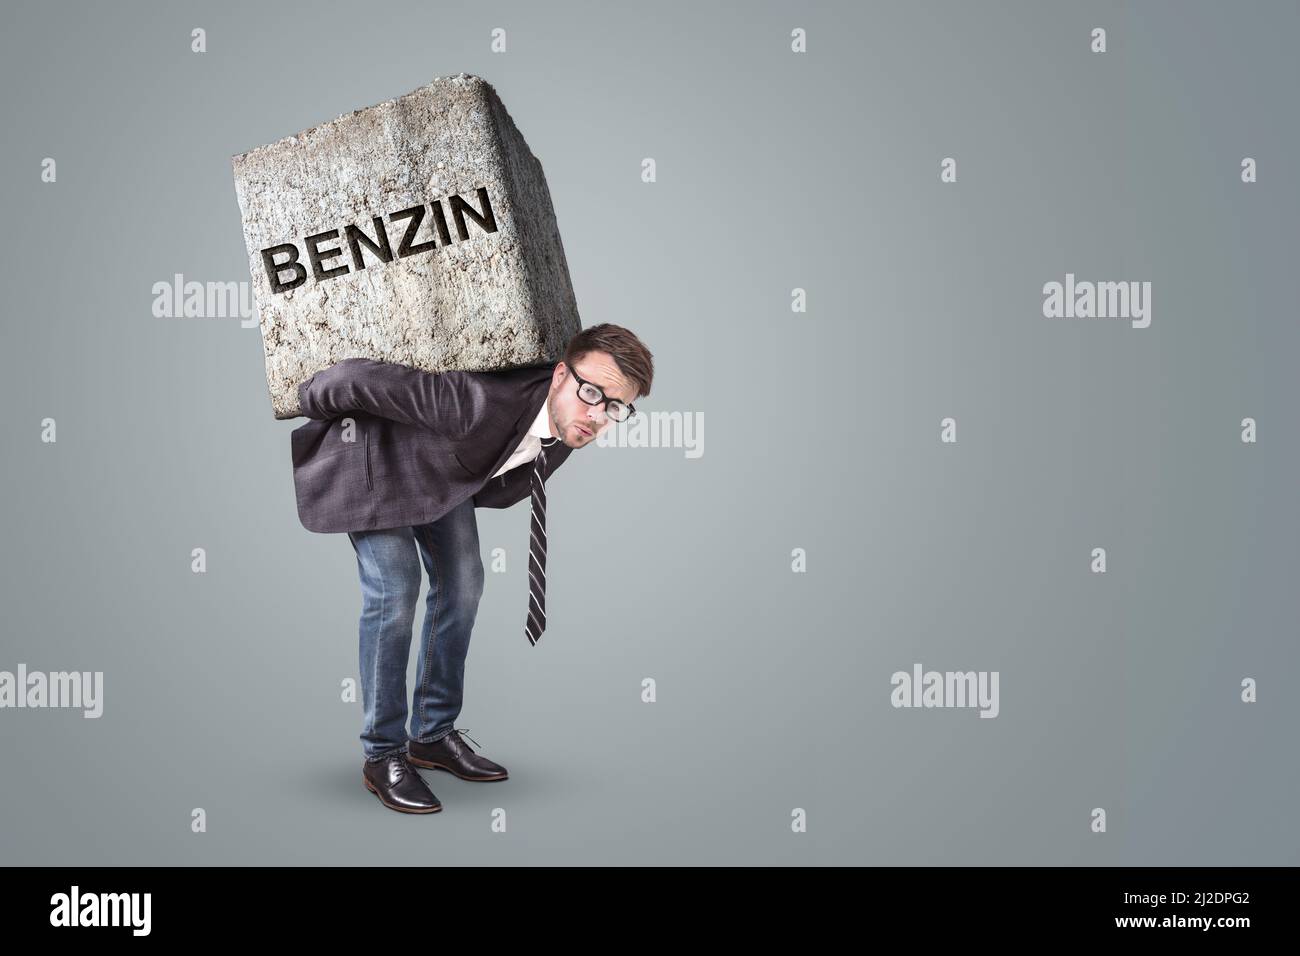 Personne accablée par une pierre lourde avec le mot BENZIN dessus Banque D'Images